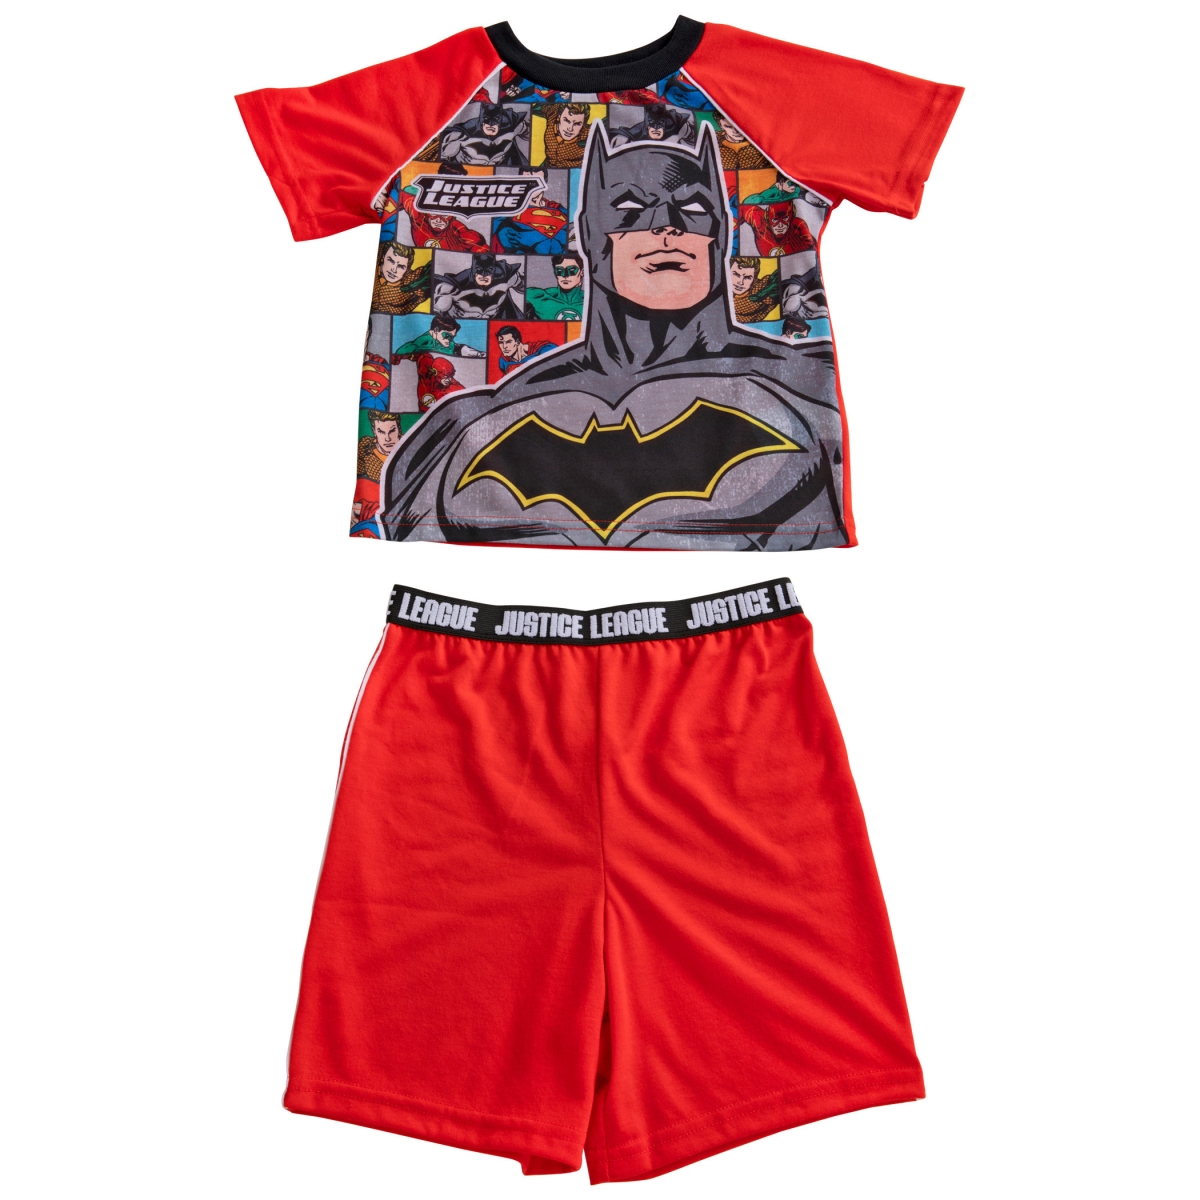 Picture of Batman 830398-size8 Batman & The Justice League Pajama Shirt & Shorts Set - Size 8